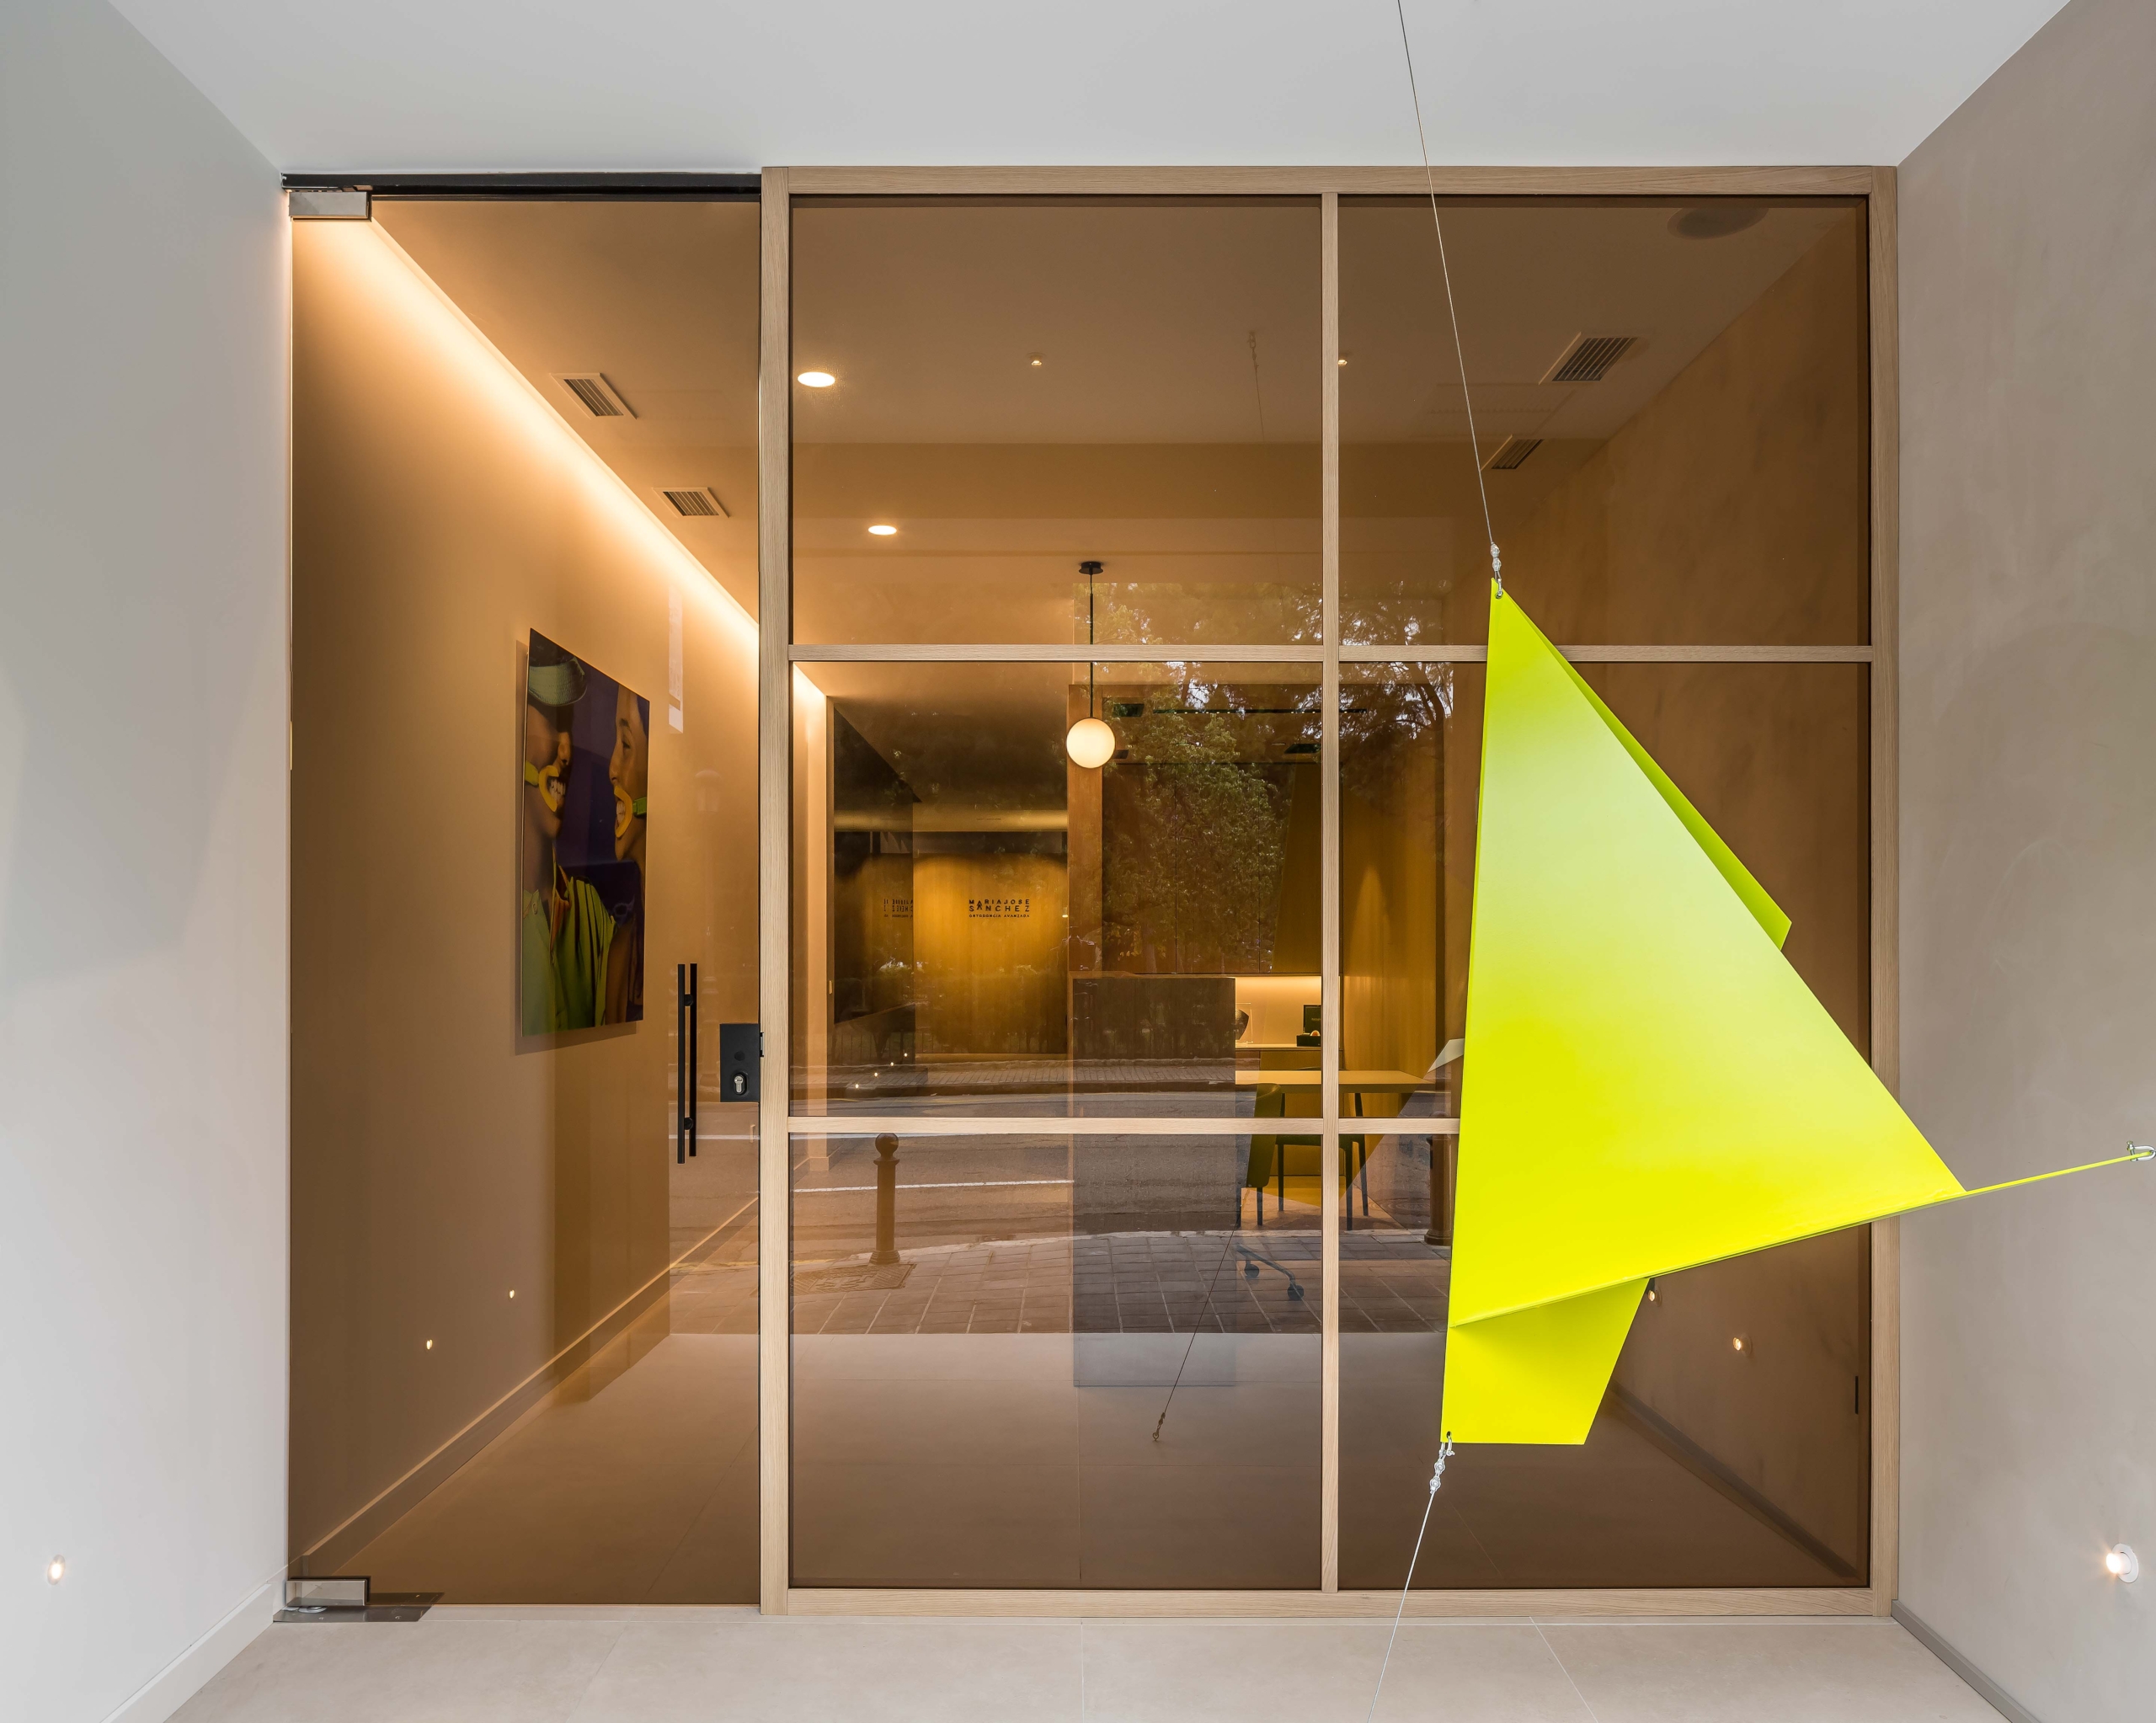 Puerta exterior con mobiliario artistico a la derecha con forma geometrica, con puerta de cristal opaca